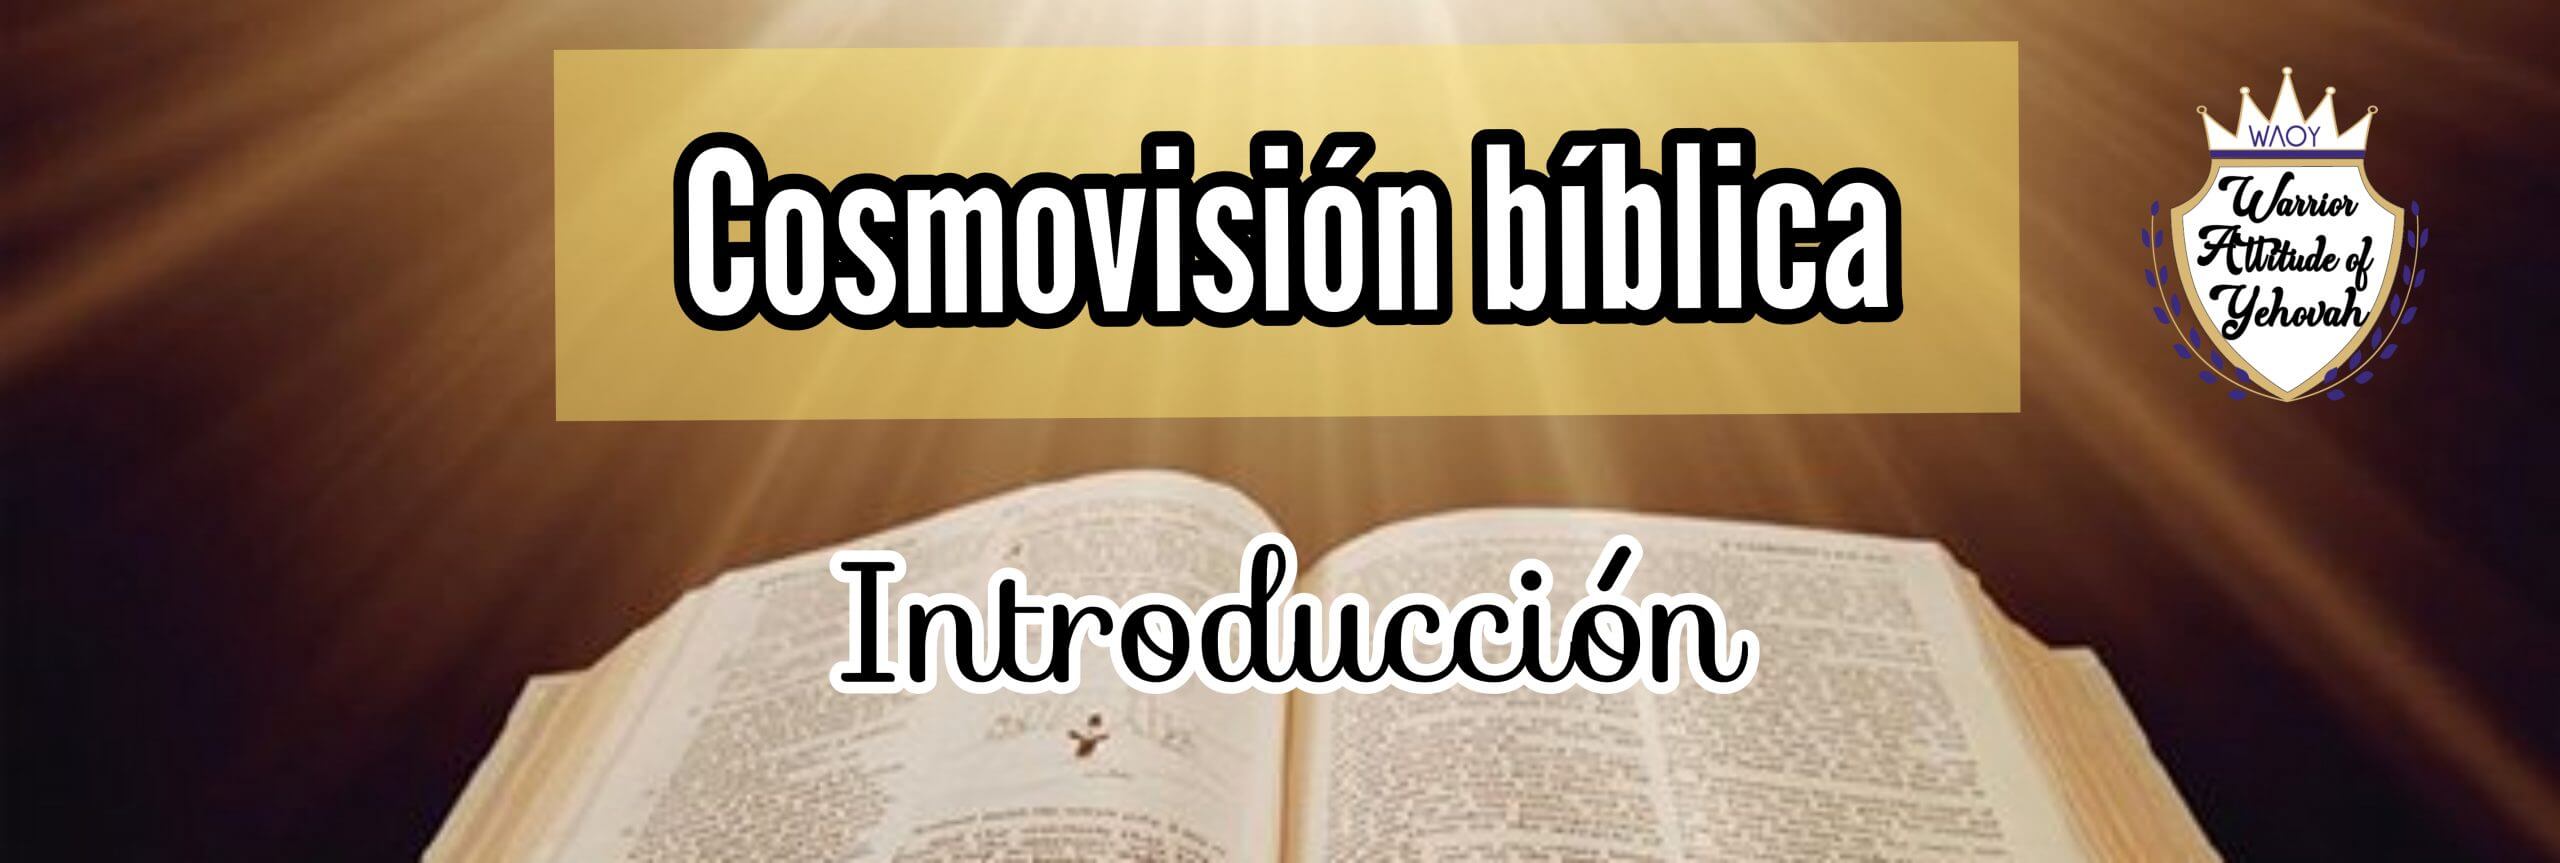 Cosmovisión bíblica Introducción Mosqueteros de Yehovah